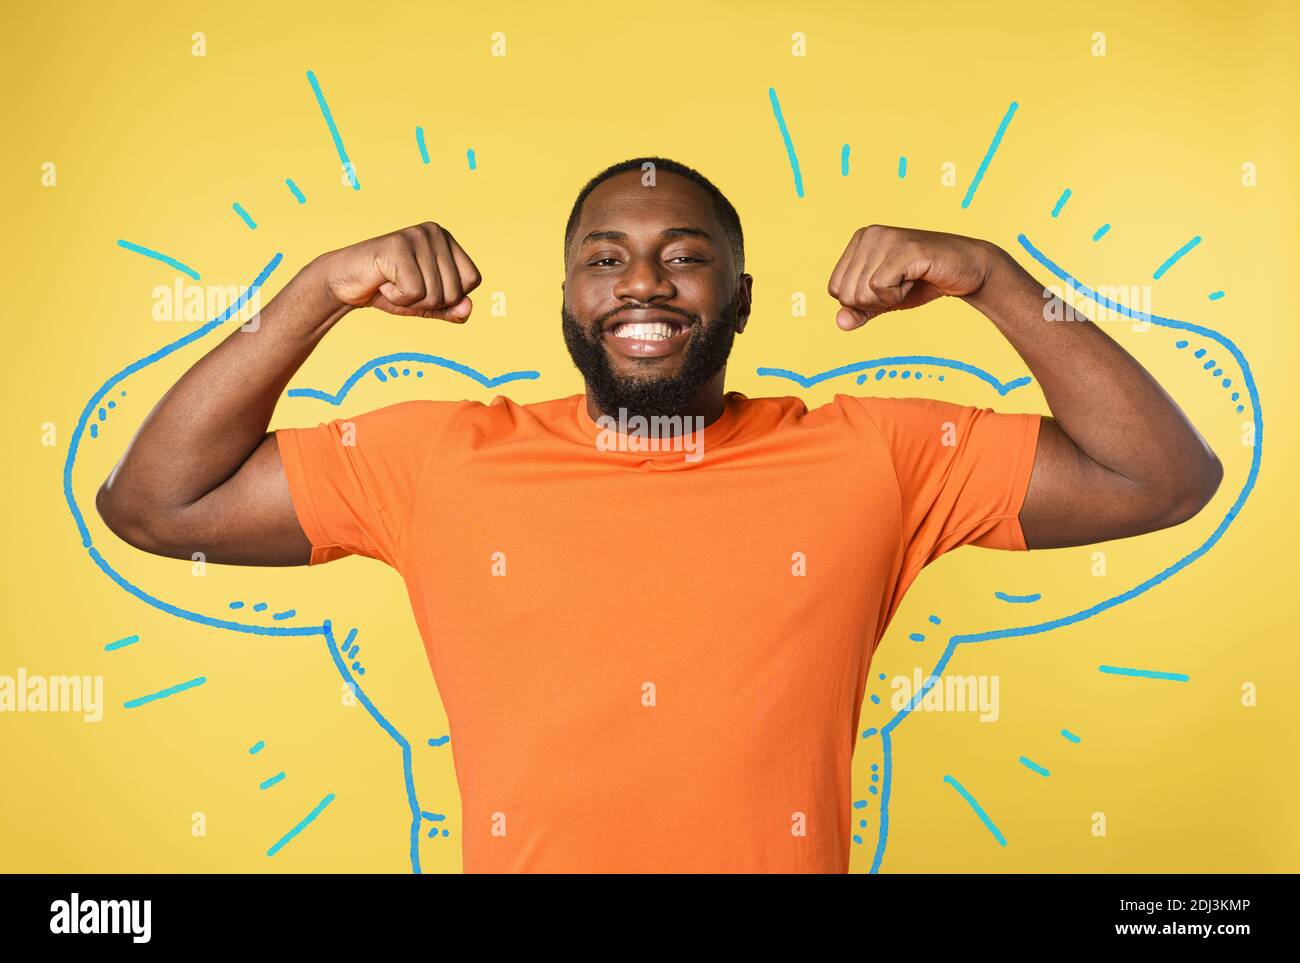 Schwarzer Mann denkt, starke Muskeln zu haben. Gelber Hintergrund Stockfoto